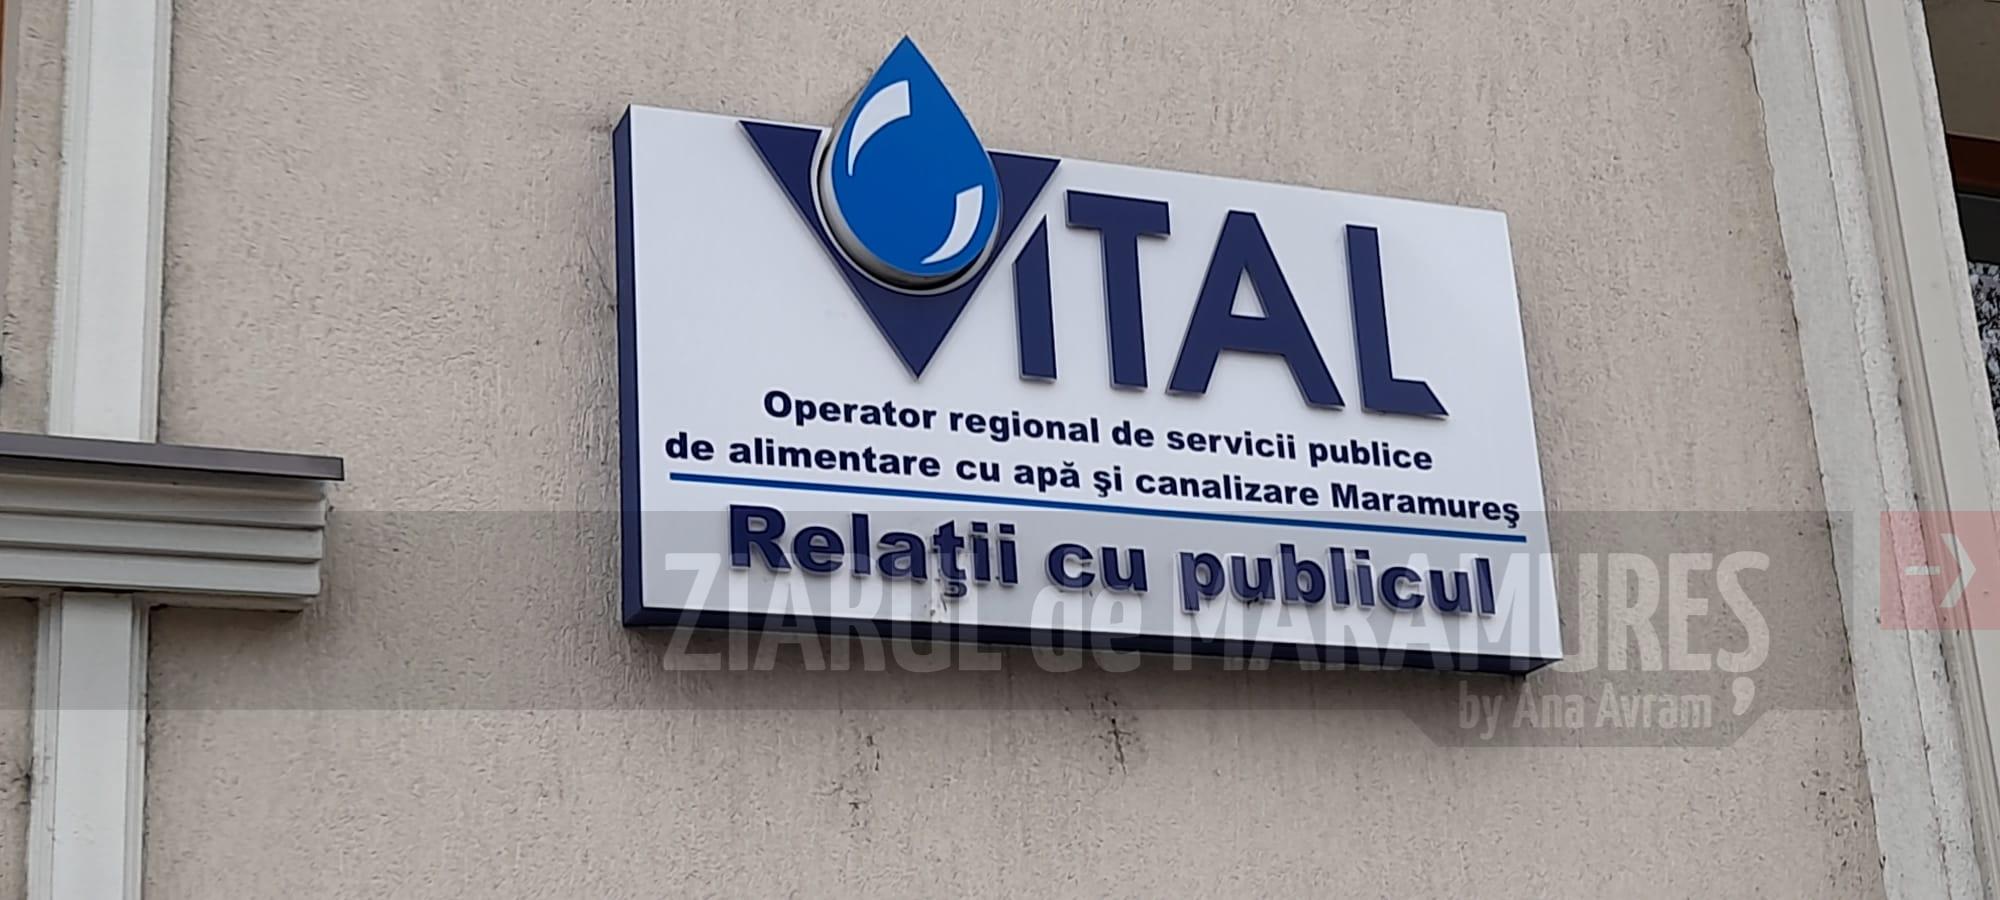 Agenția SC VITAL Târgu Lăpuș. Program în furnizarea apei potabile/presiune redusă la apa potabilă